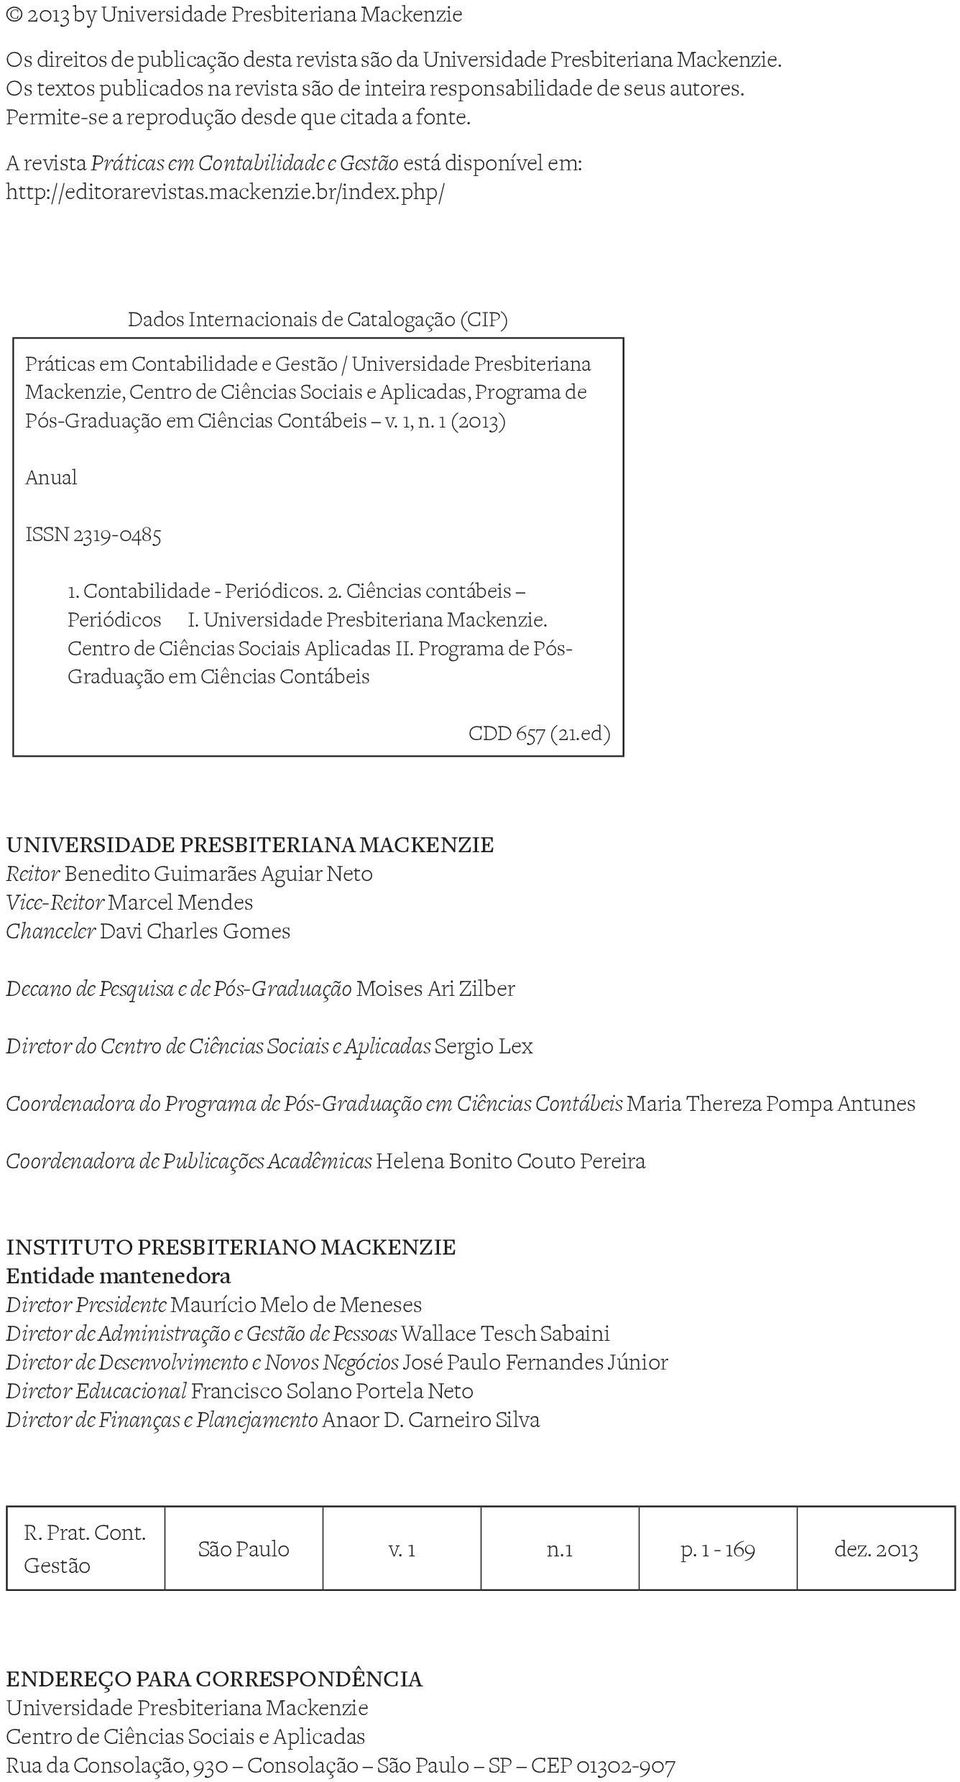 A revista Práticas em Contabilidade e Gestão está disponível em: http://editorarevistas.mackenzie.br/index.